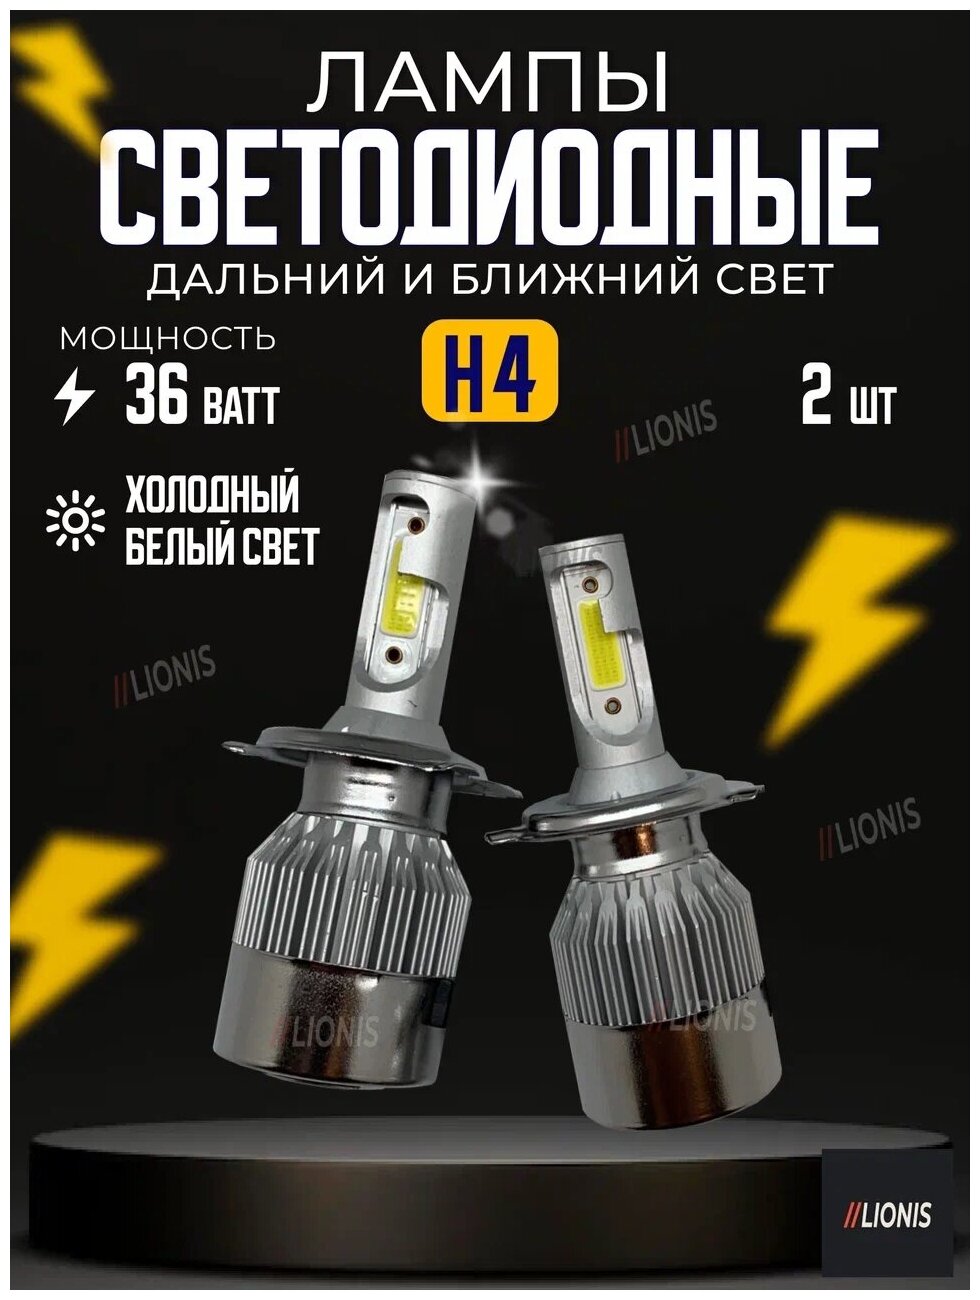 H4 лампа светодиодная для авто 2шт. LED C6 (ярче ксенона) 12/24V 6000K 3800Lm / LED лампа для машины / светодиодная лампа для авто